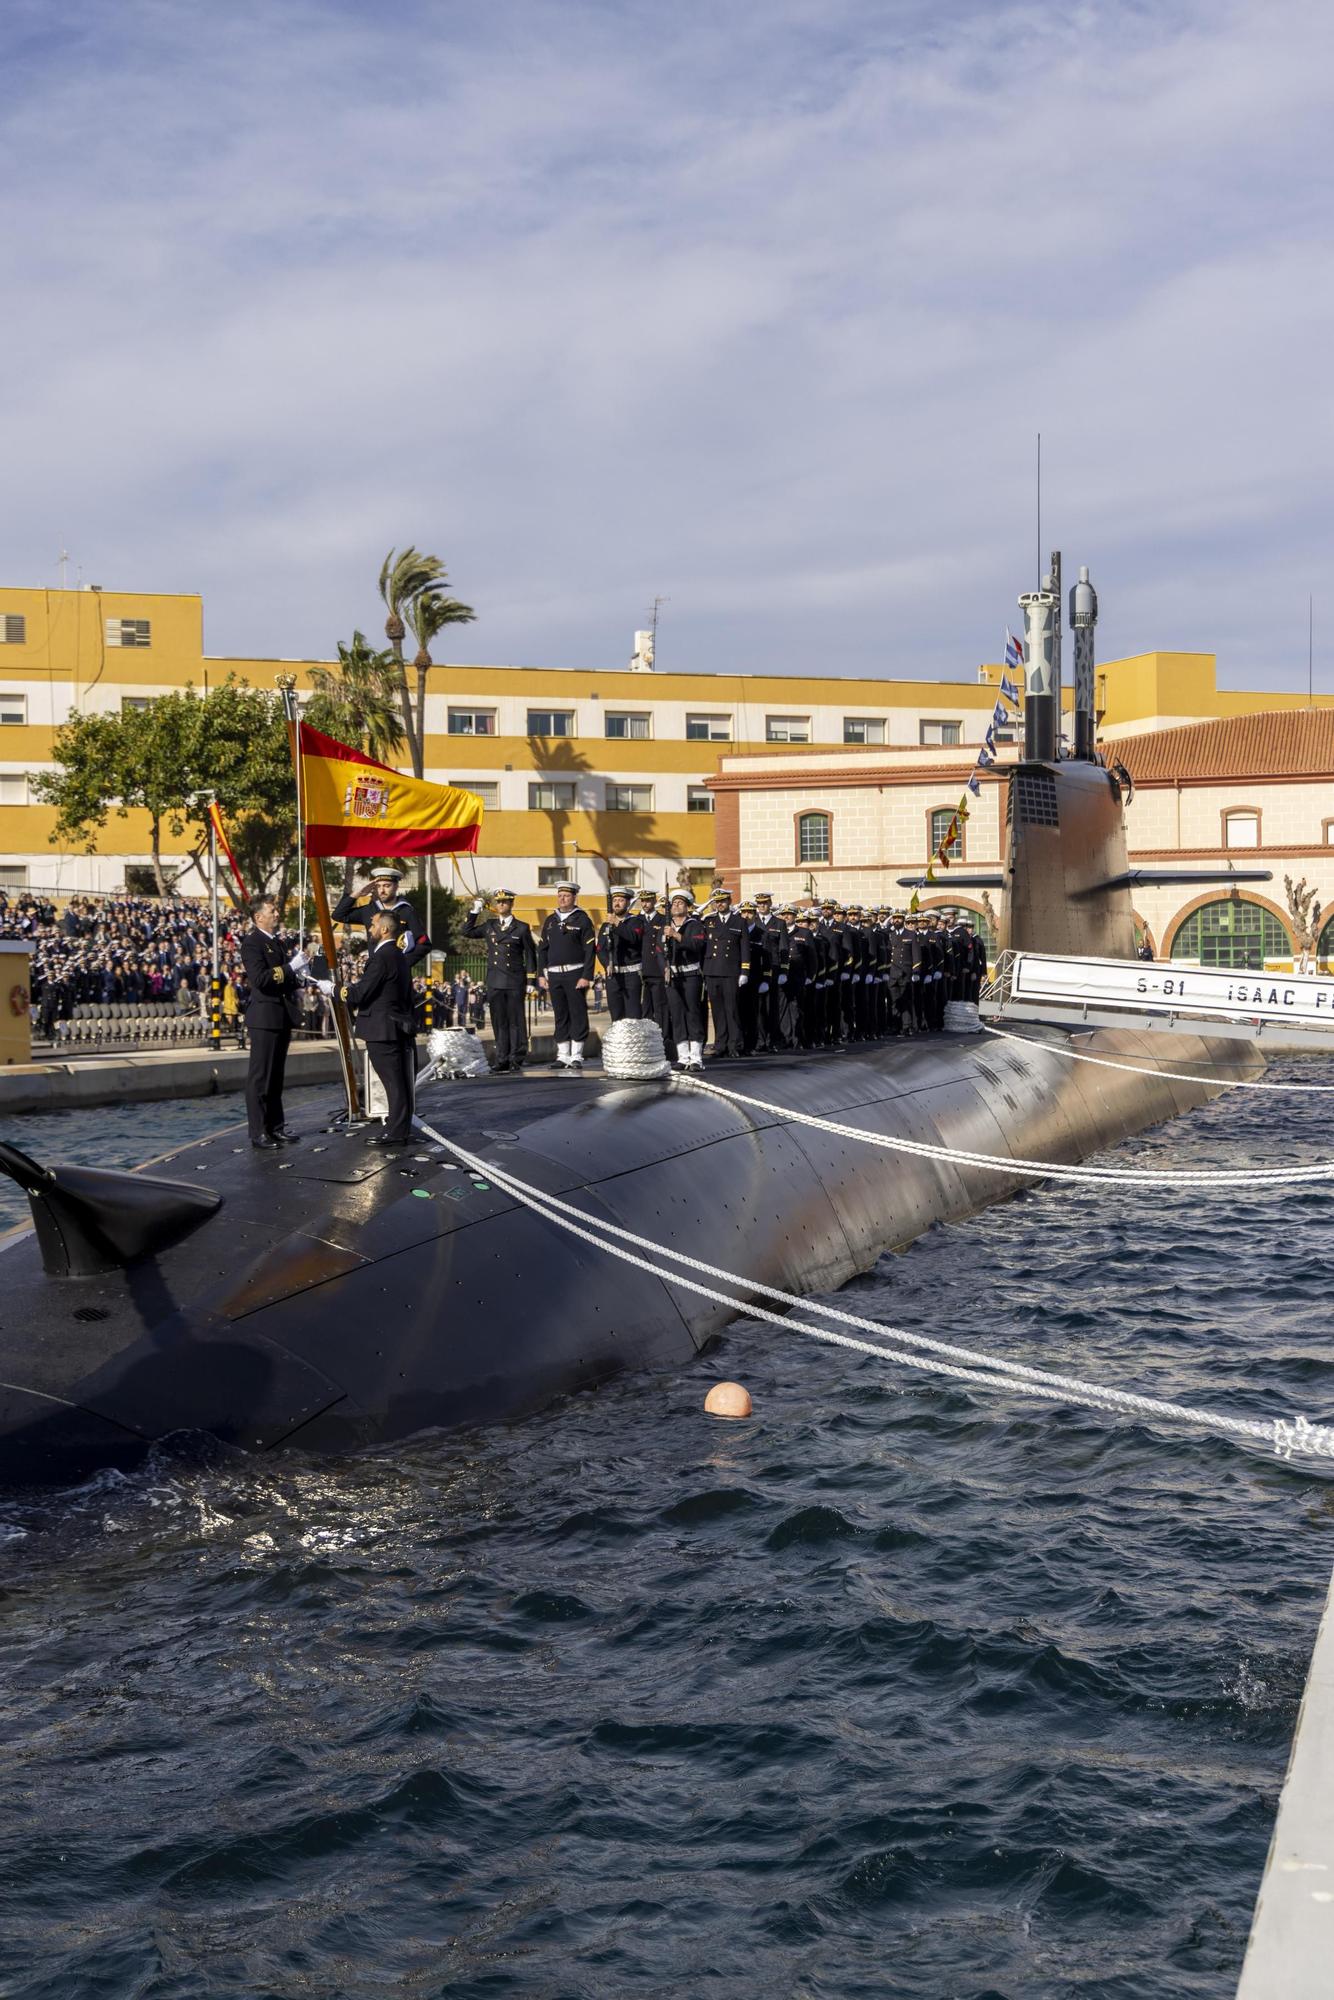 FOTOS: La Armada recibe el submarino S-81 de manos de Navantia